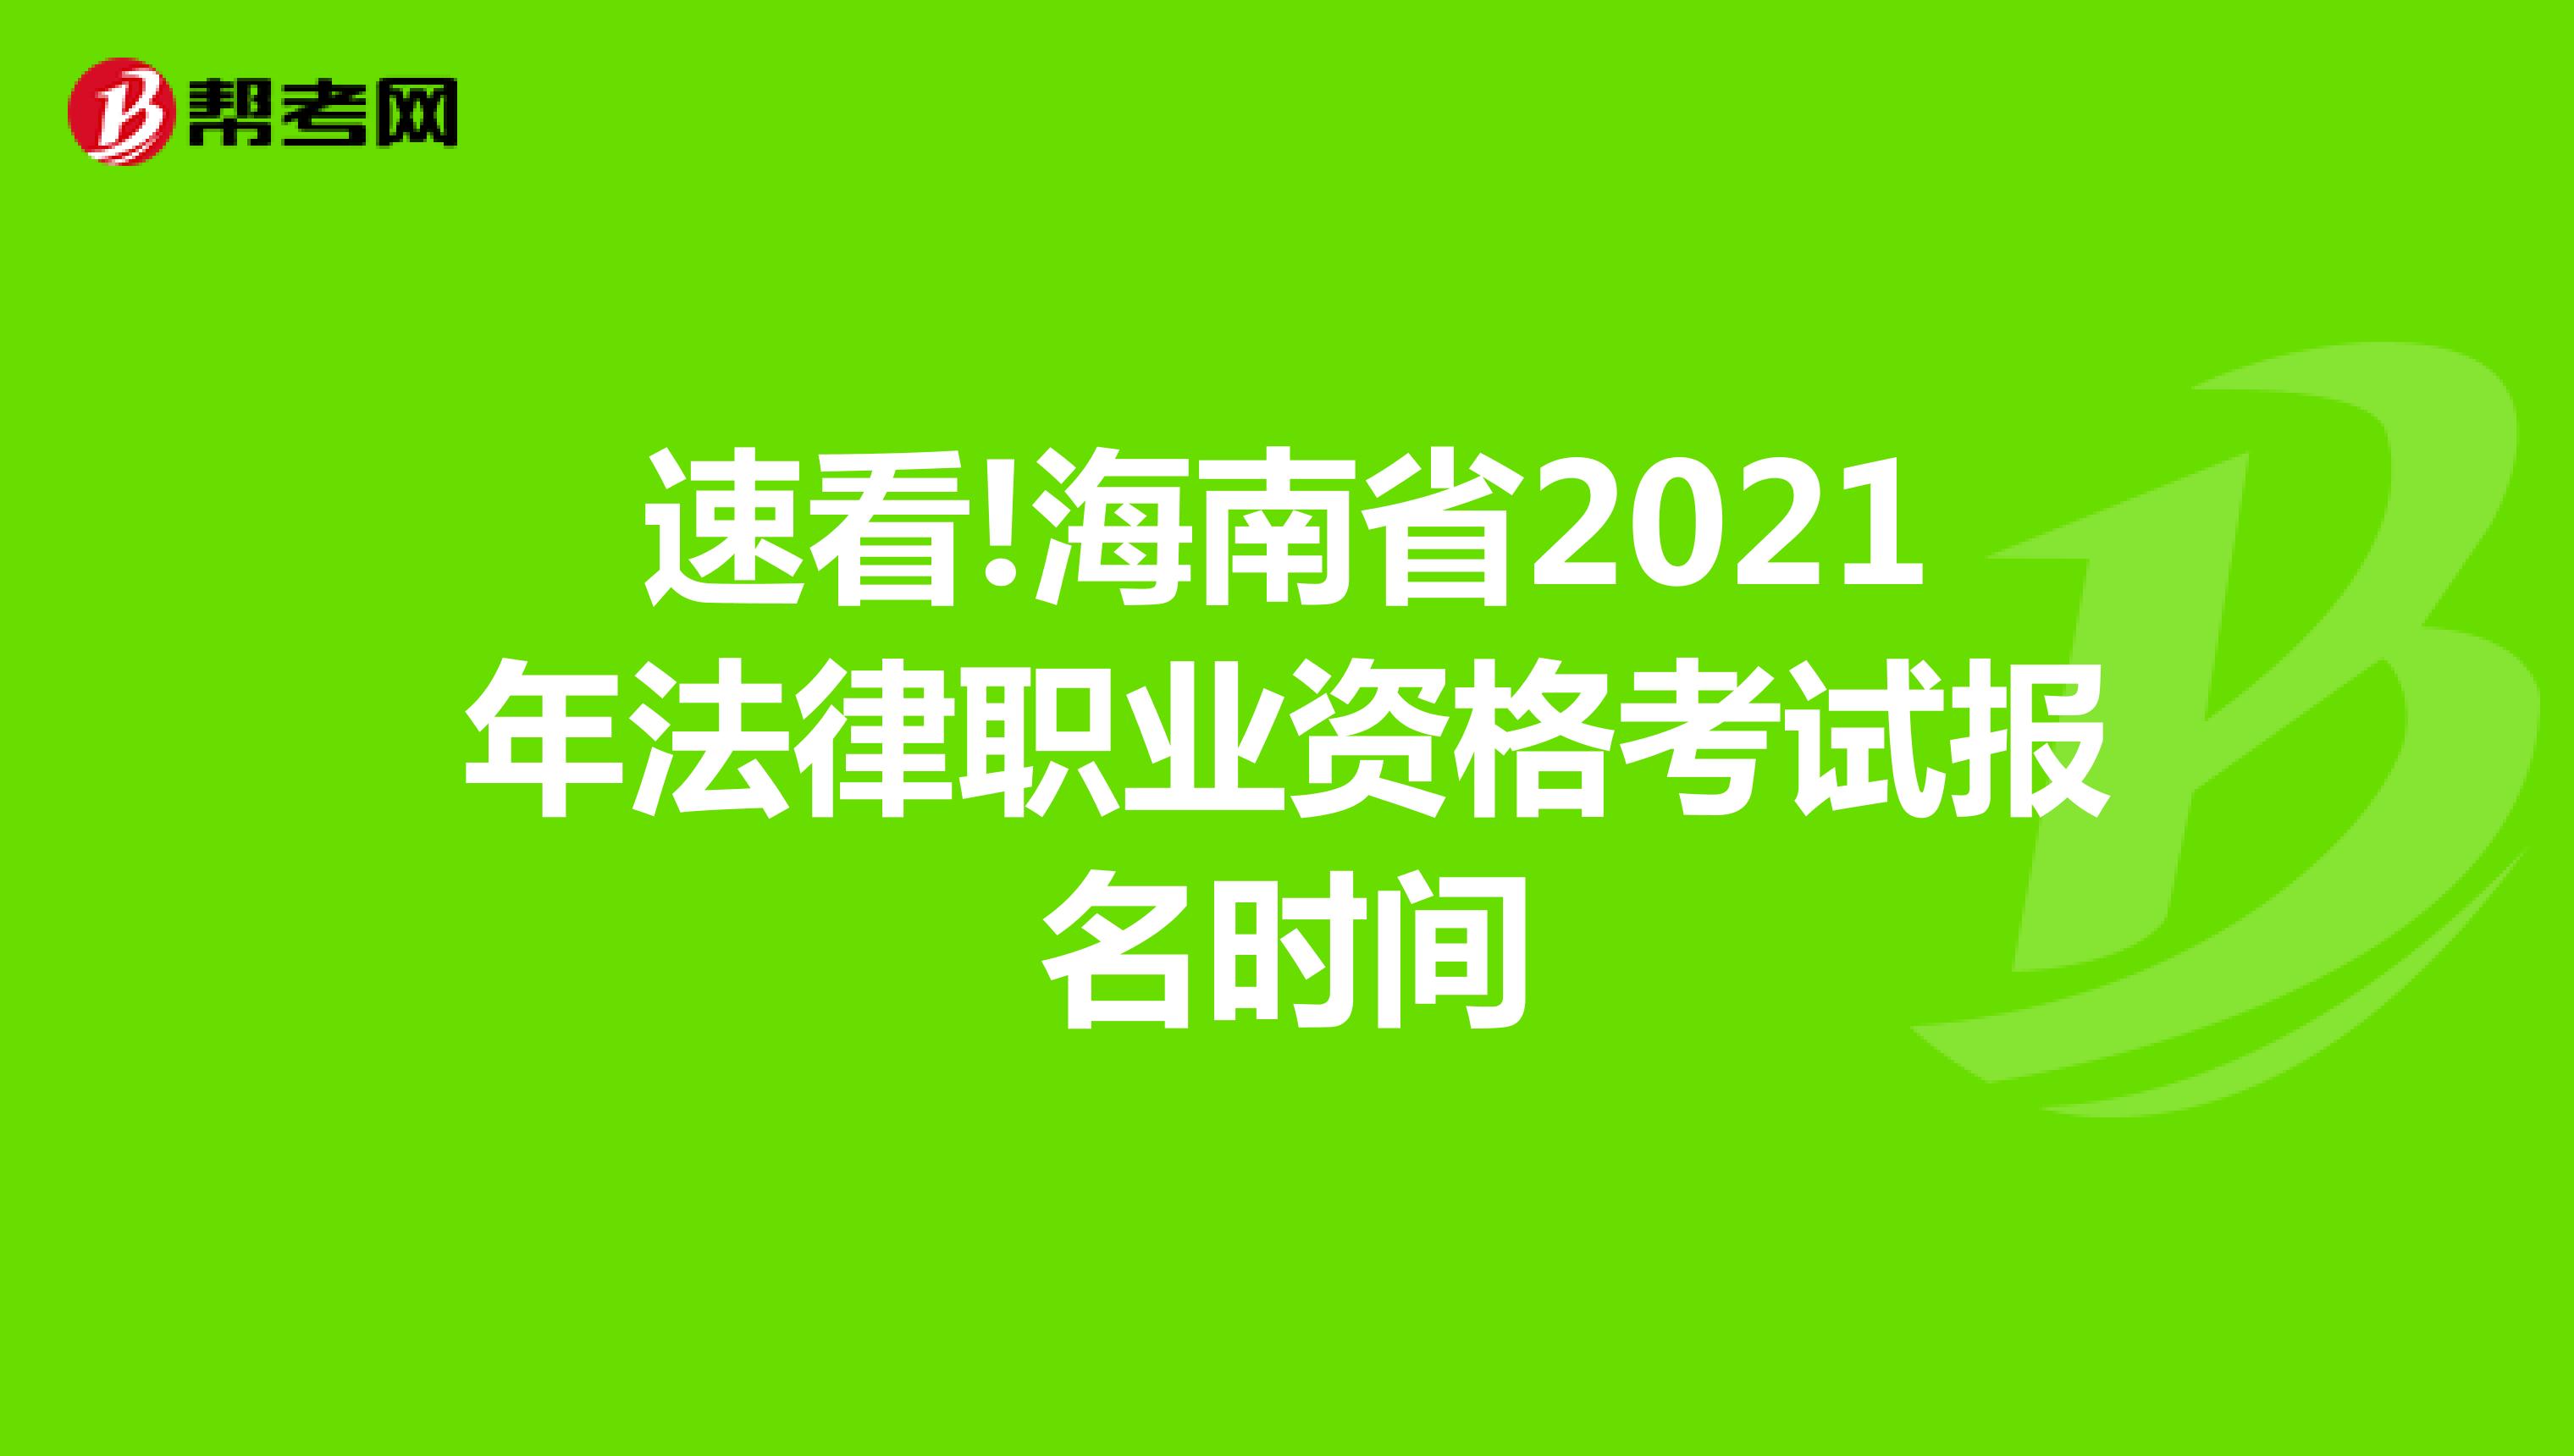 速看!海南省2021年法律职业资格考试报名时间